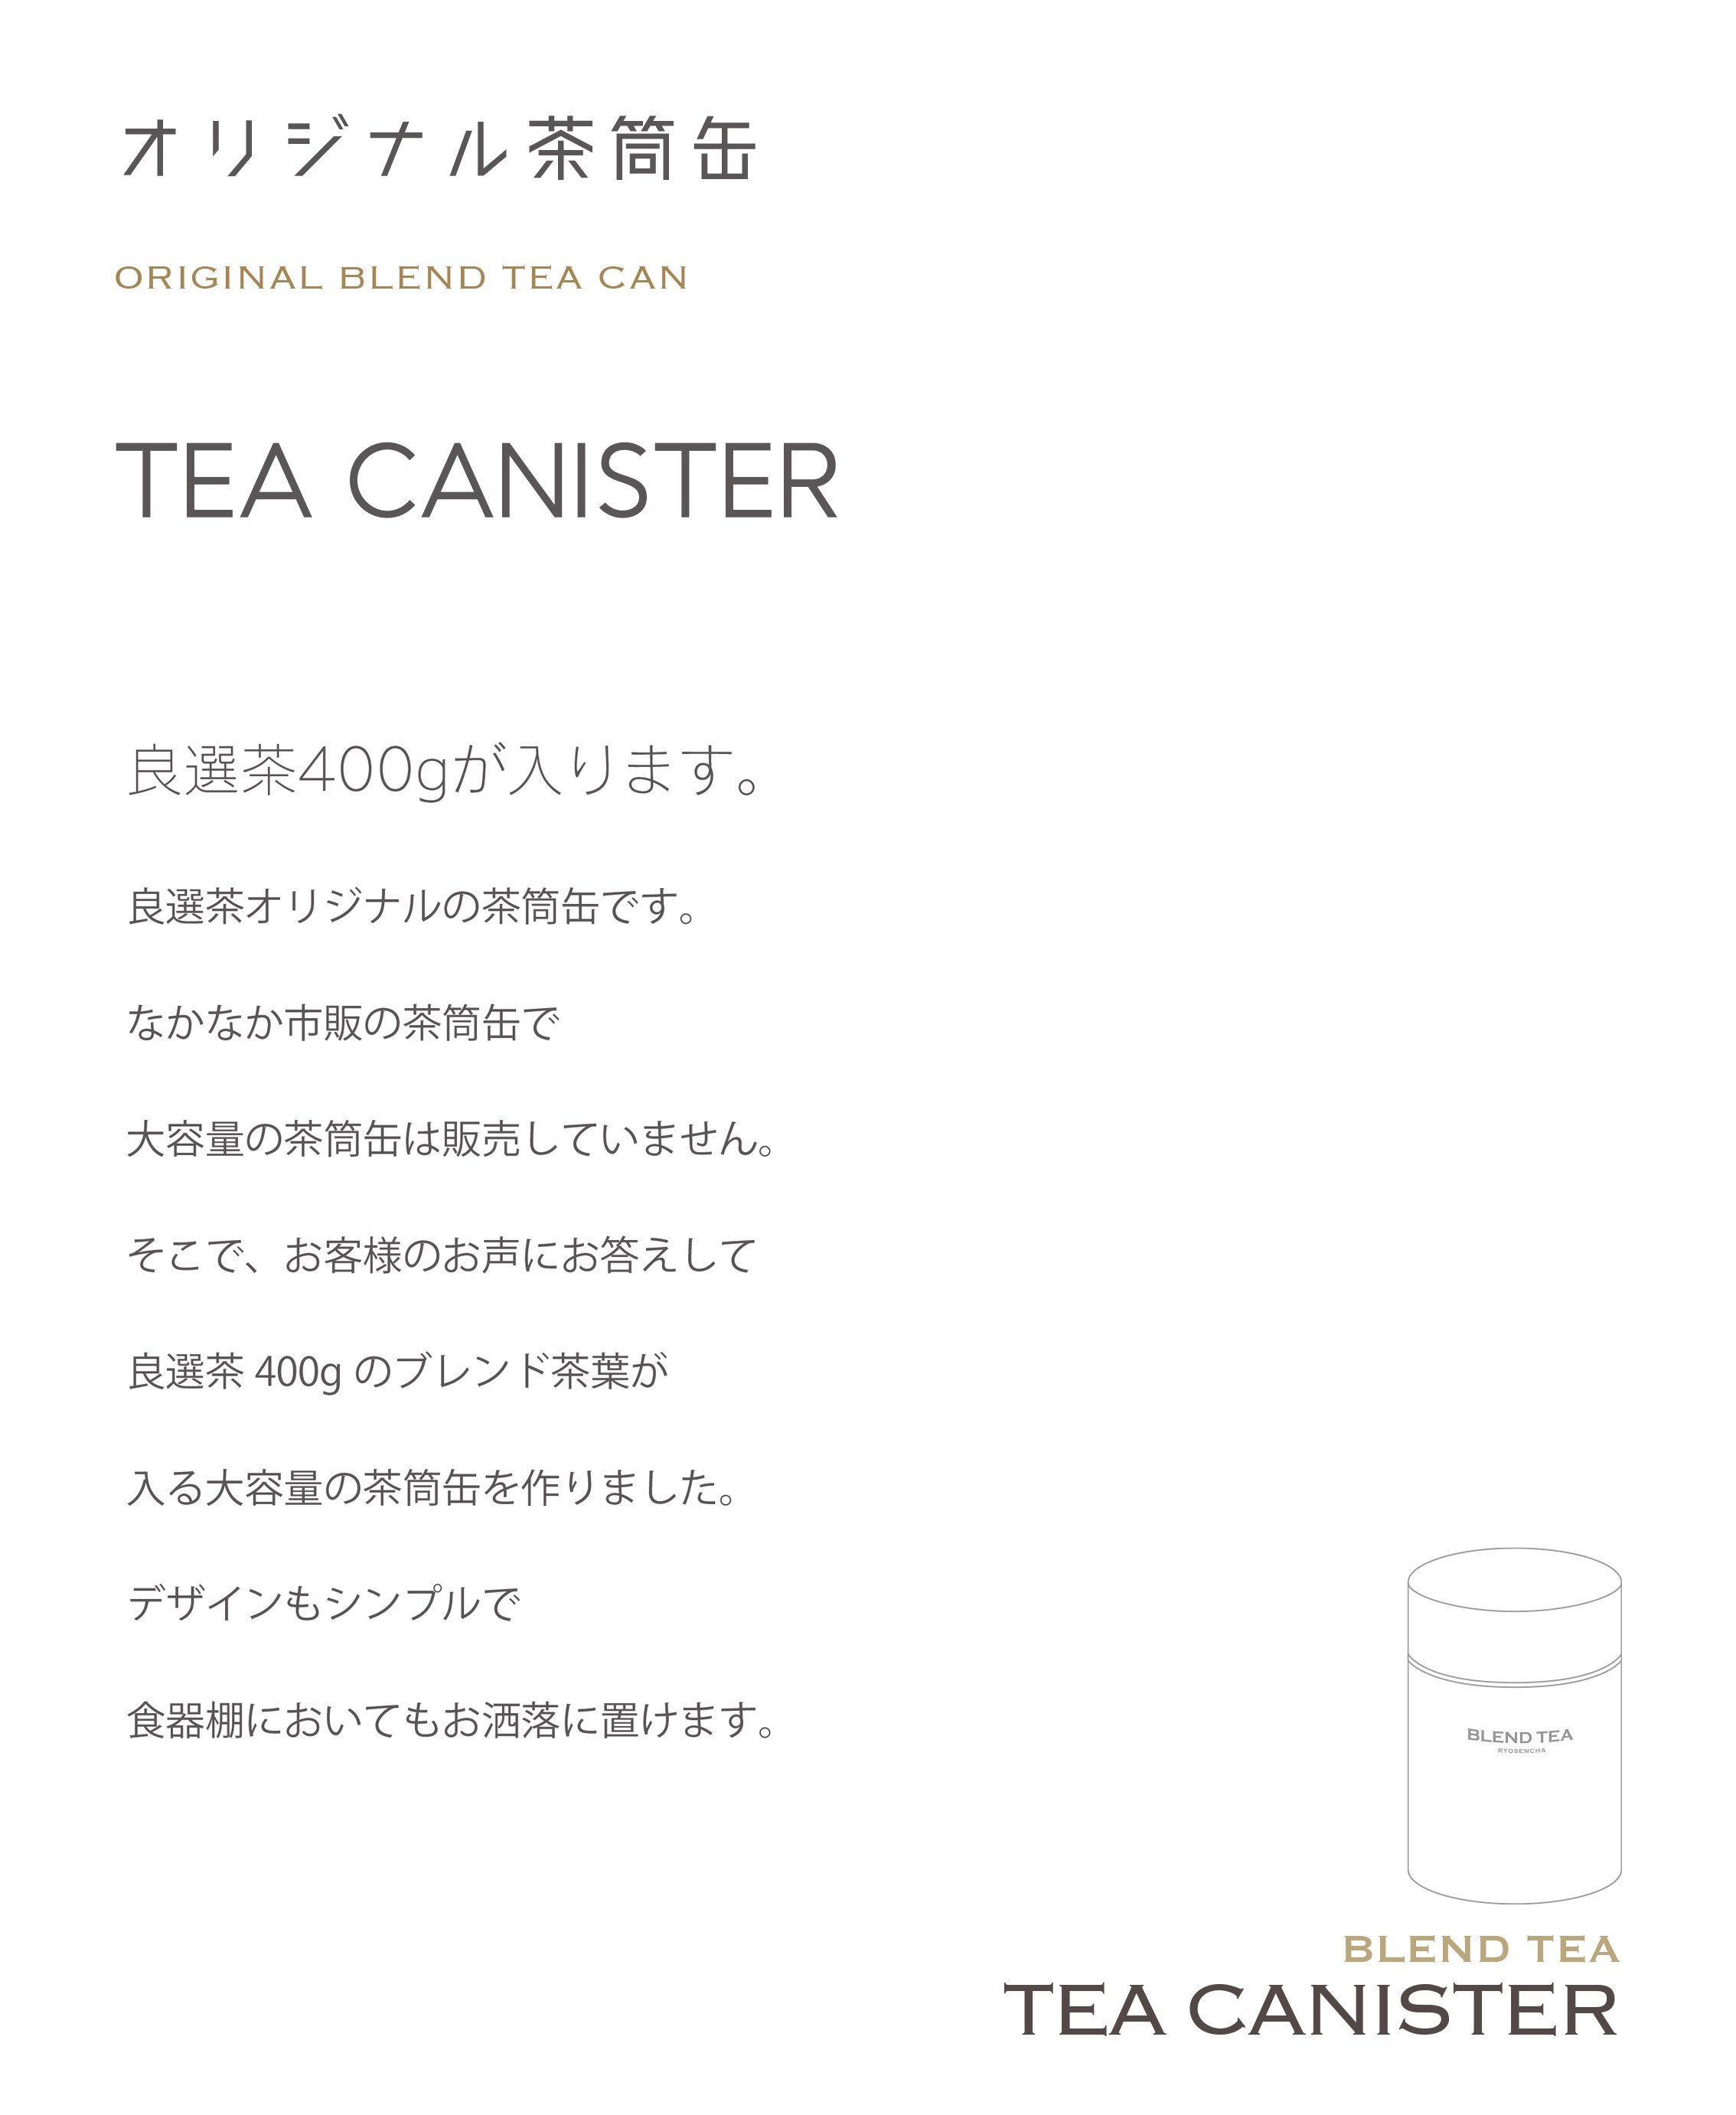 茶筒缶の説明